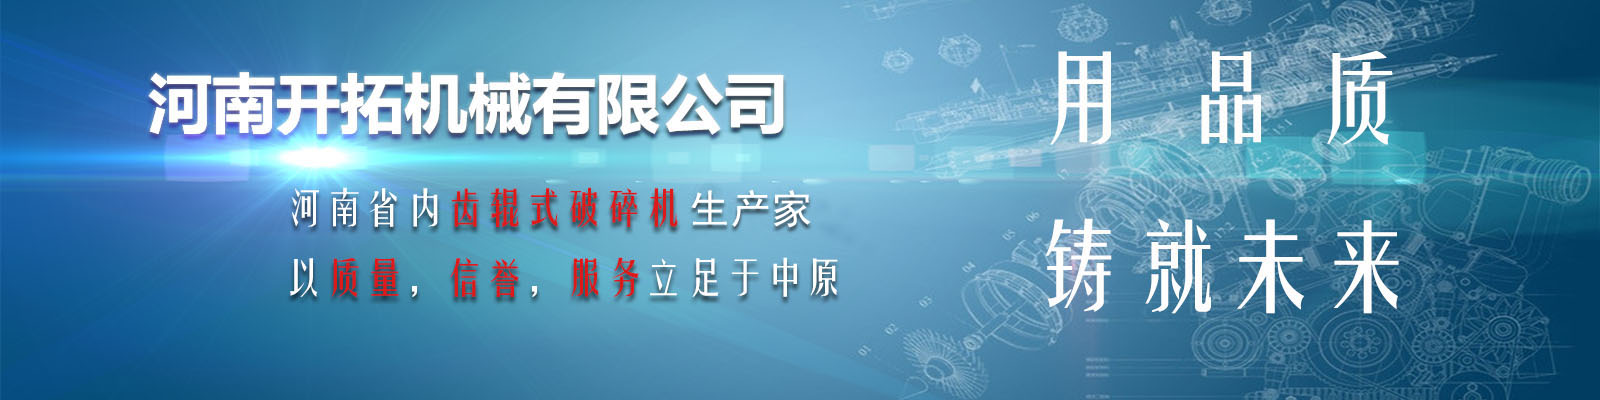 河南NG体育机械(www.viscb.com)